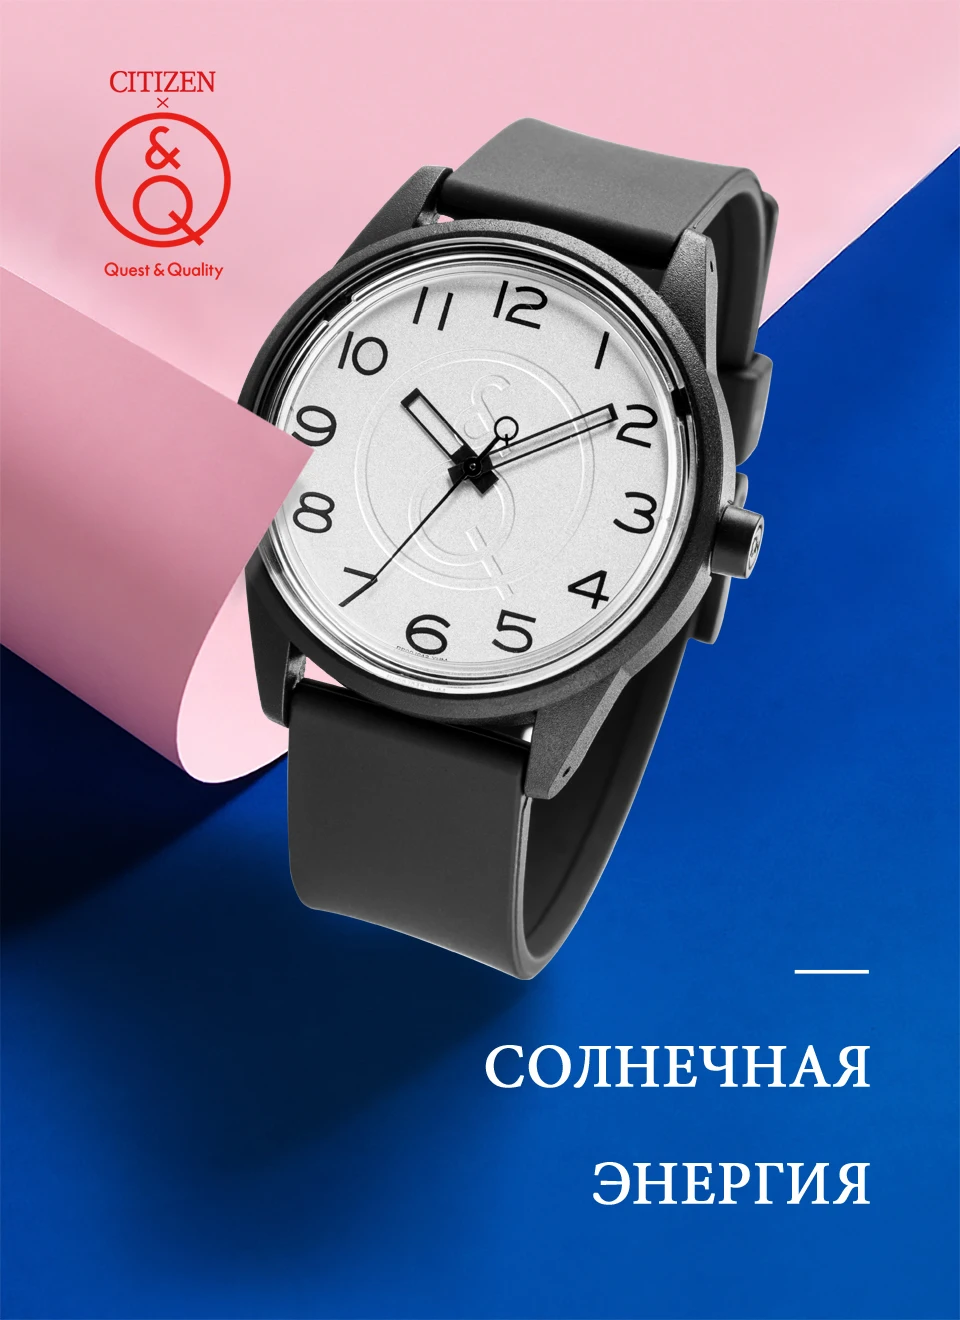 Citizen Q&Q часы для мужчин набор Топ люксовый бренд Водонепроницаемый Спорт кварцевые солнечные мужские часы унисекс Relogio Masculino reloj 0J042Y